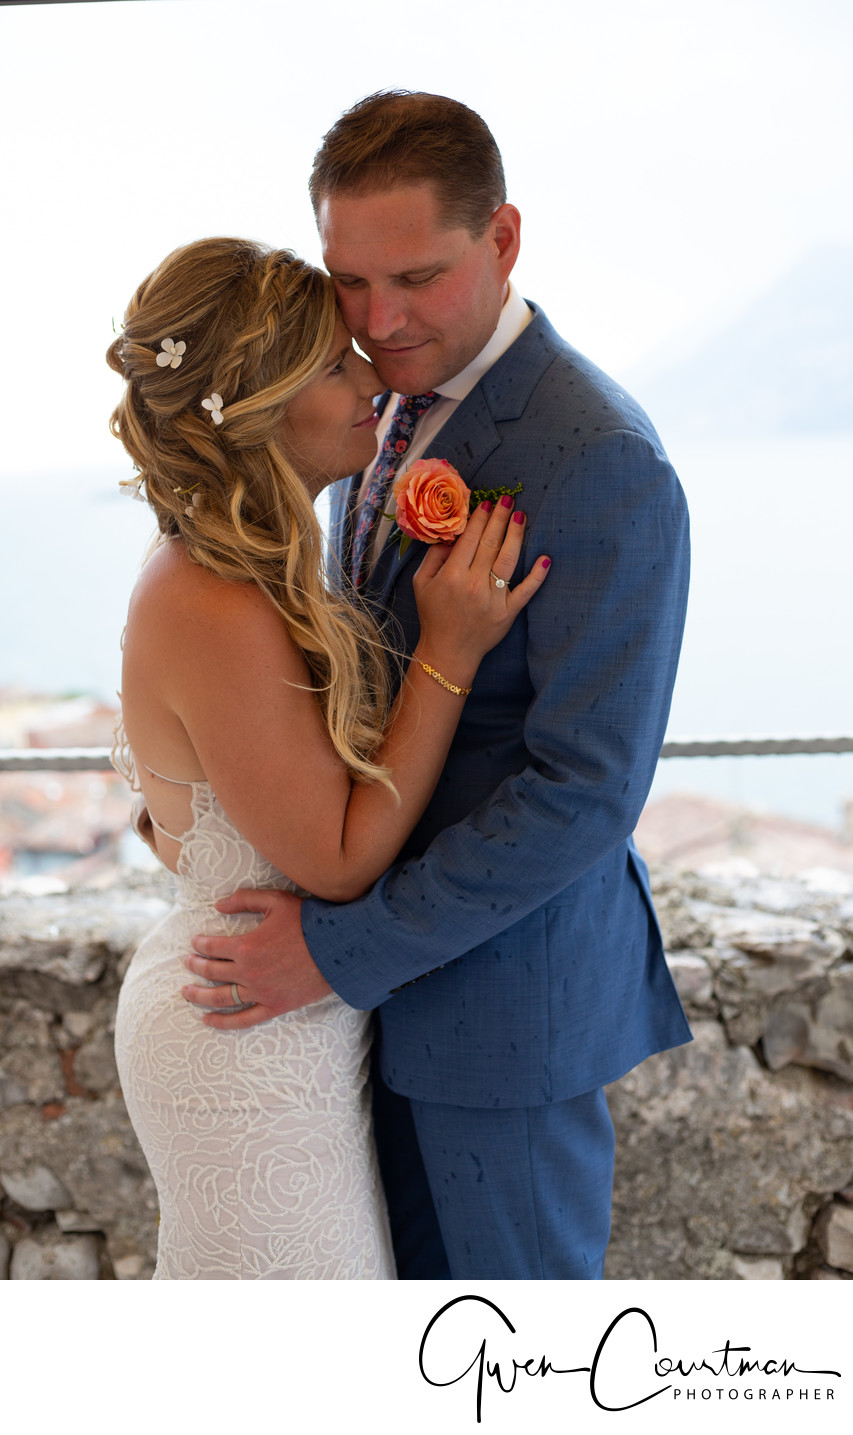 Amercian Weddings in Italy, Wedding Photography. 